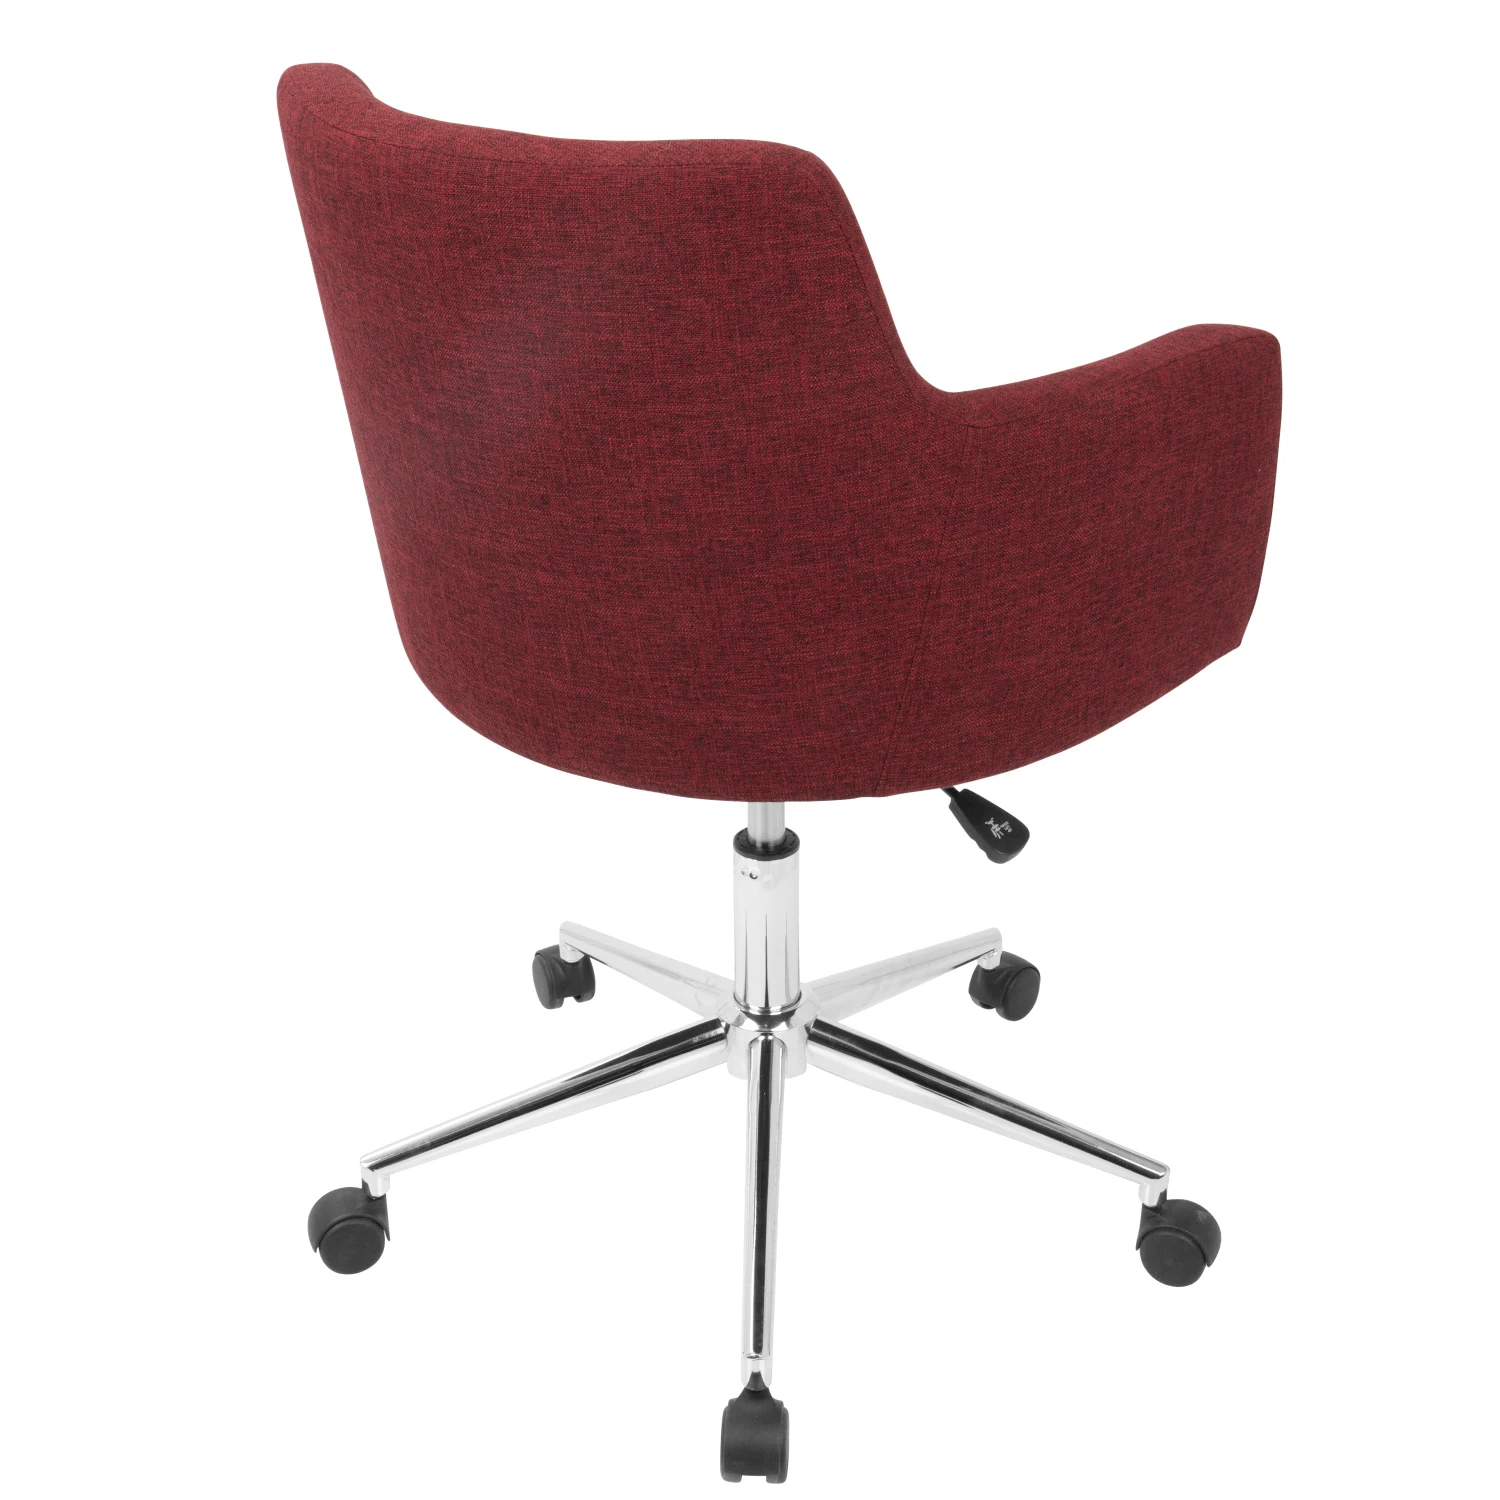 كرسي مكتب أحمر عصري قابل للتعديل من LumiSource ، دعم مريح ، تصميم حديث